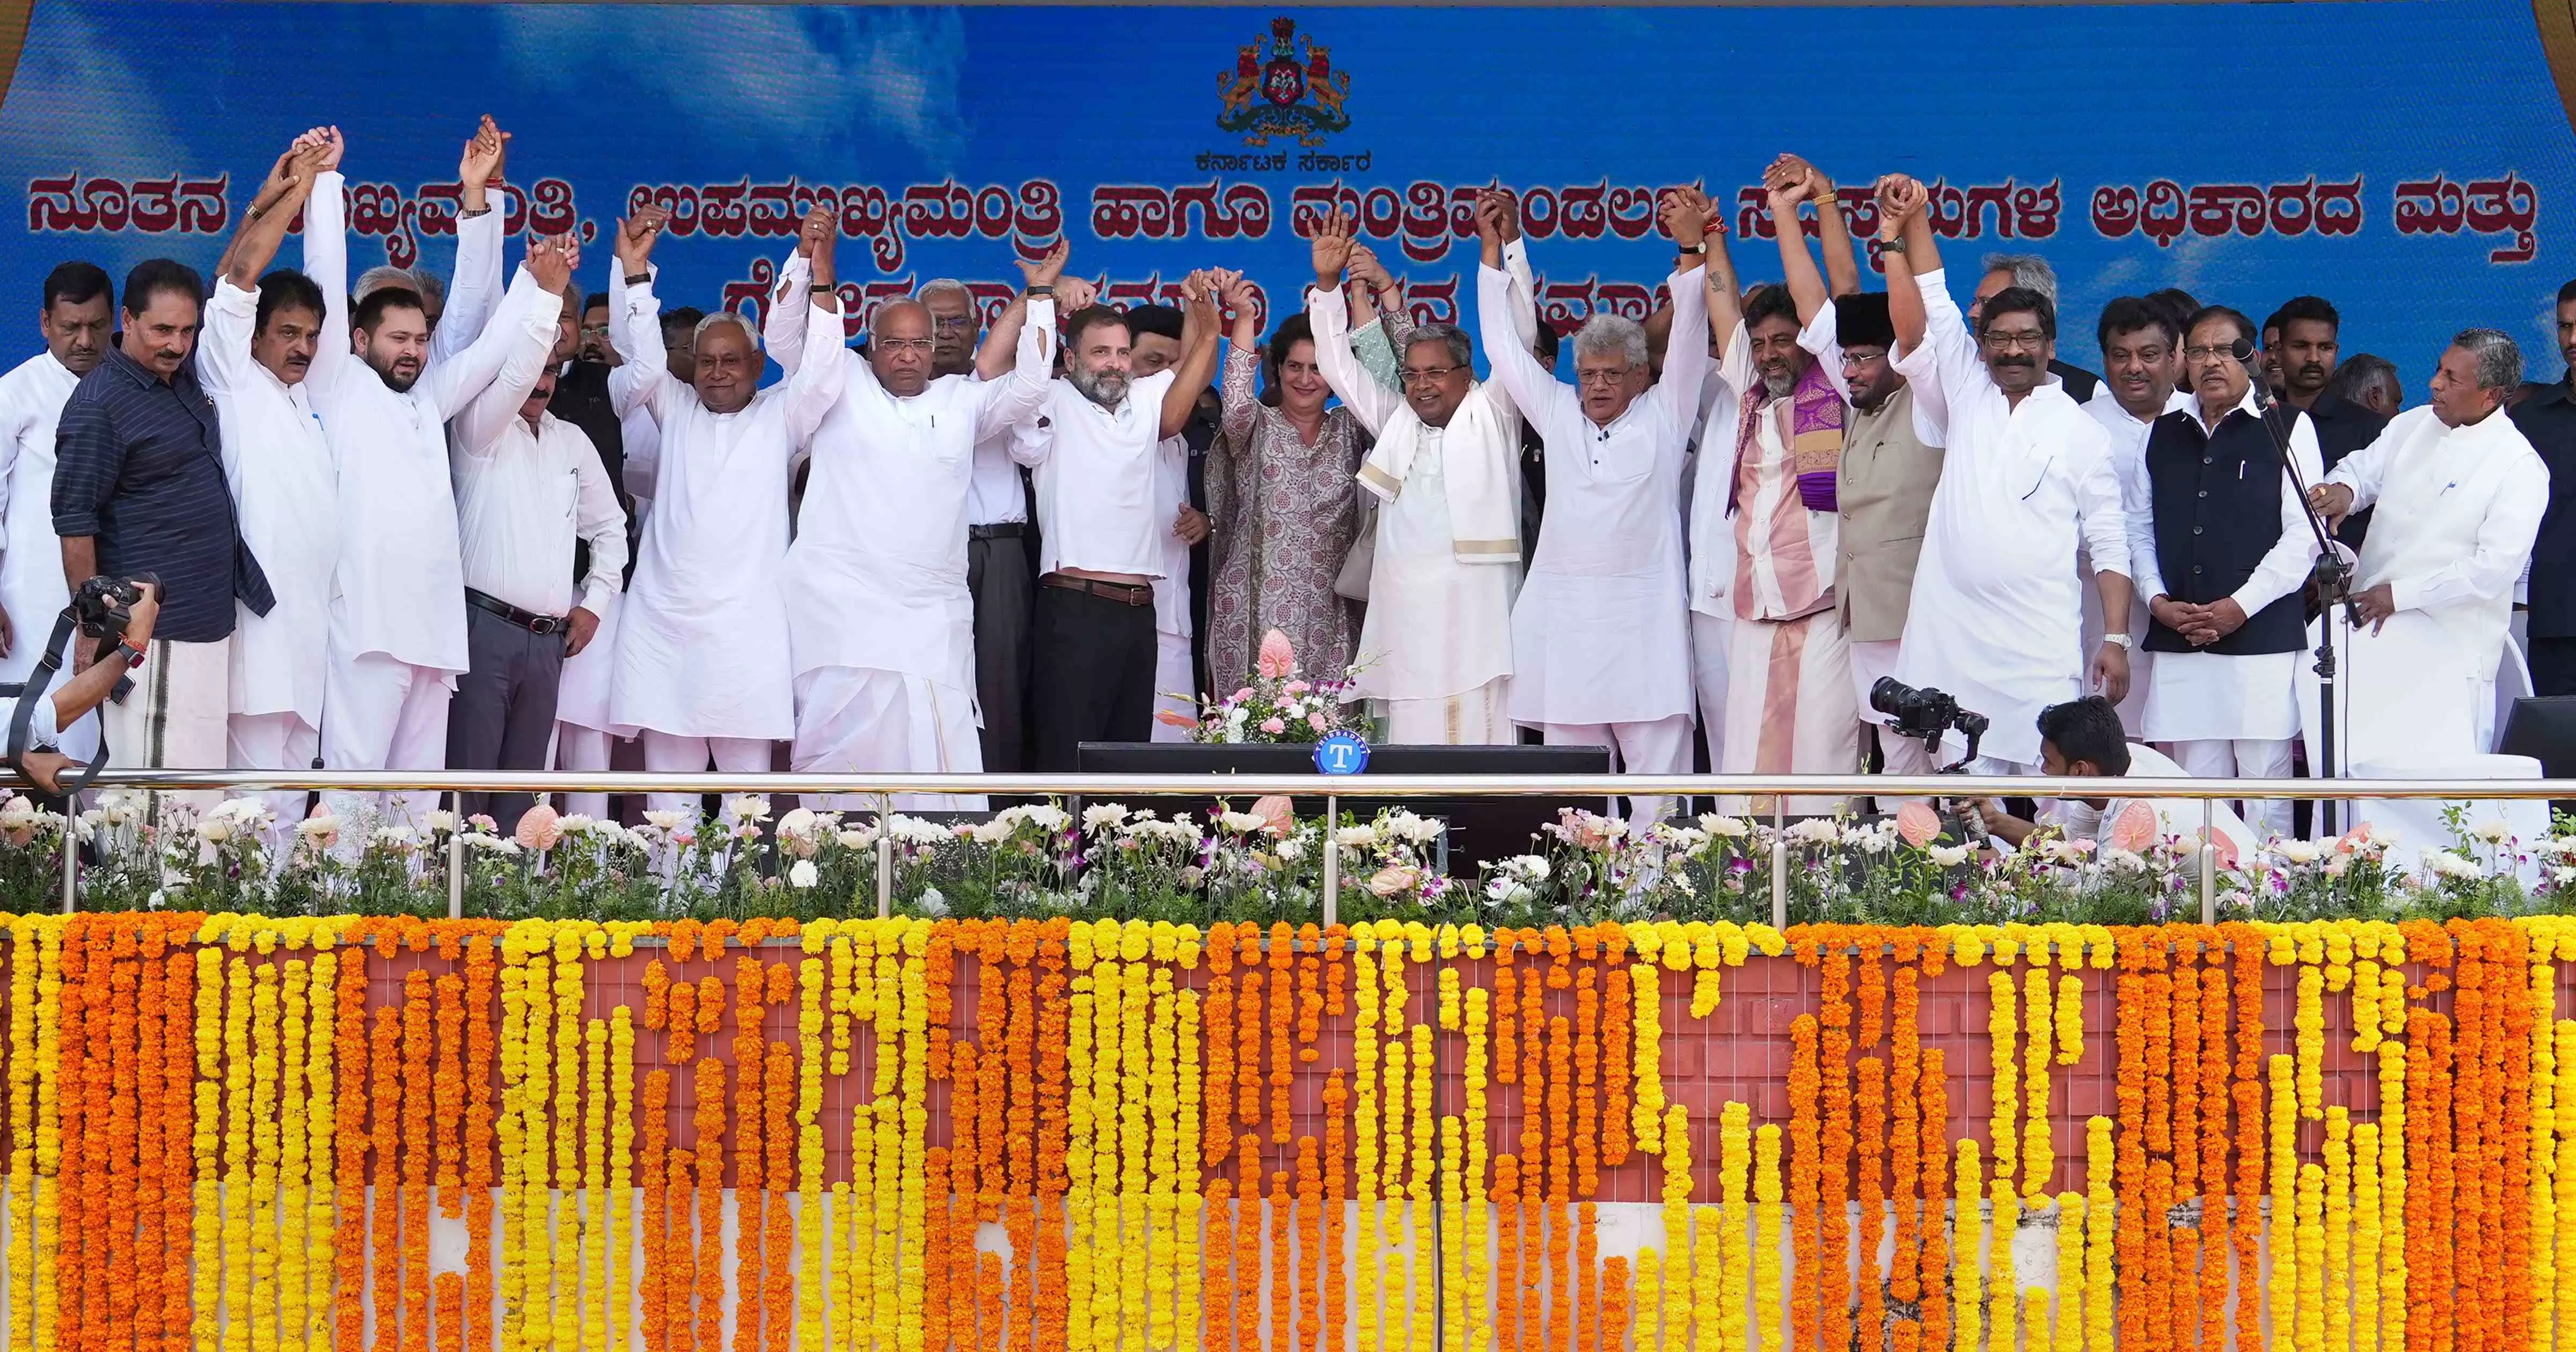 24 legislators in Karnataka to take oath as ministers today